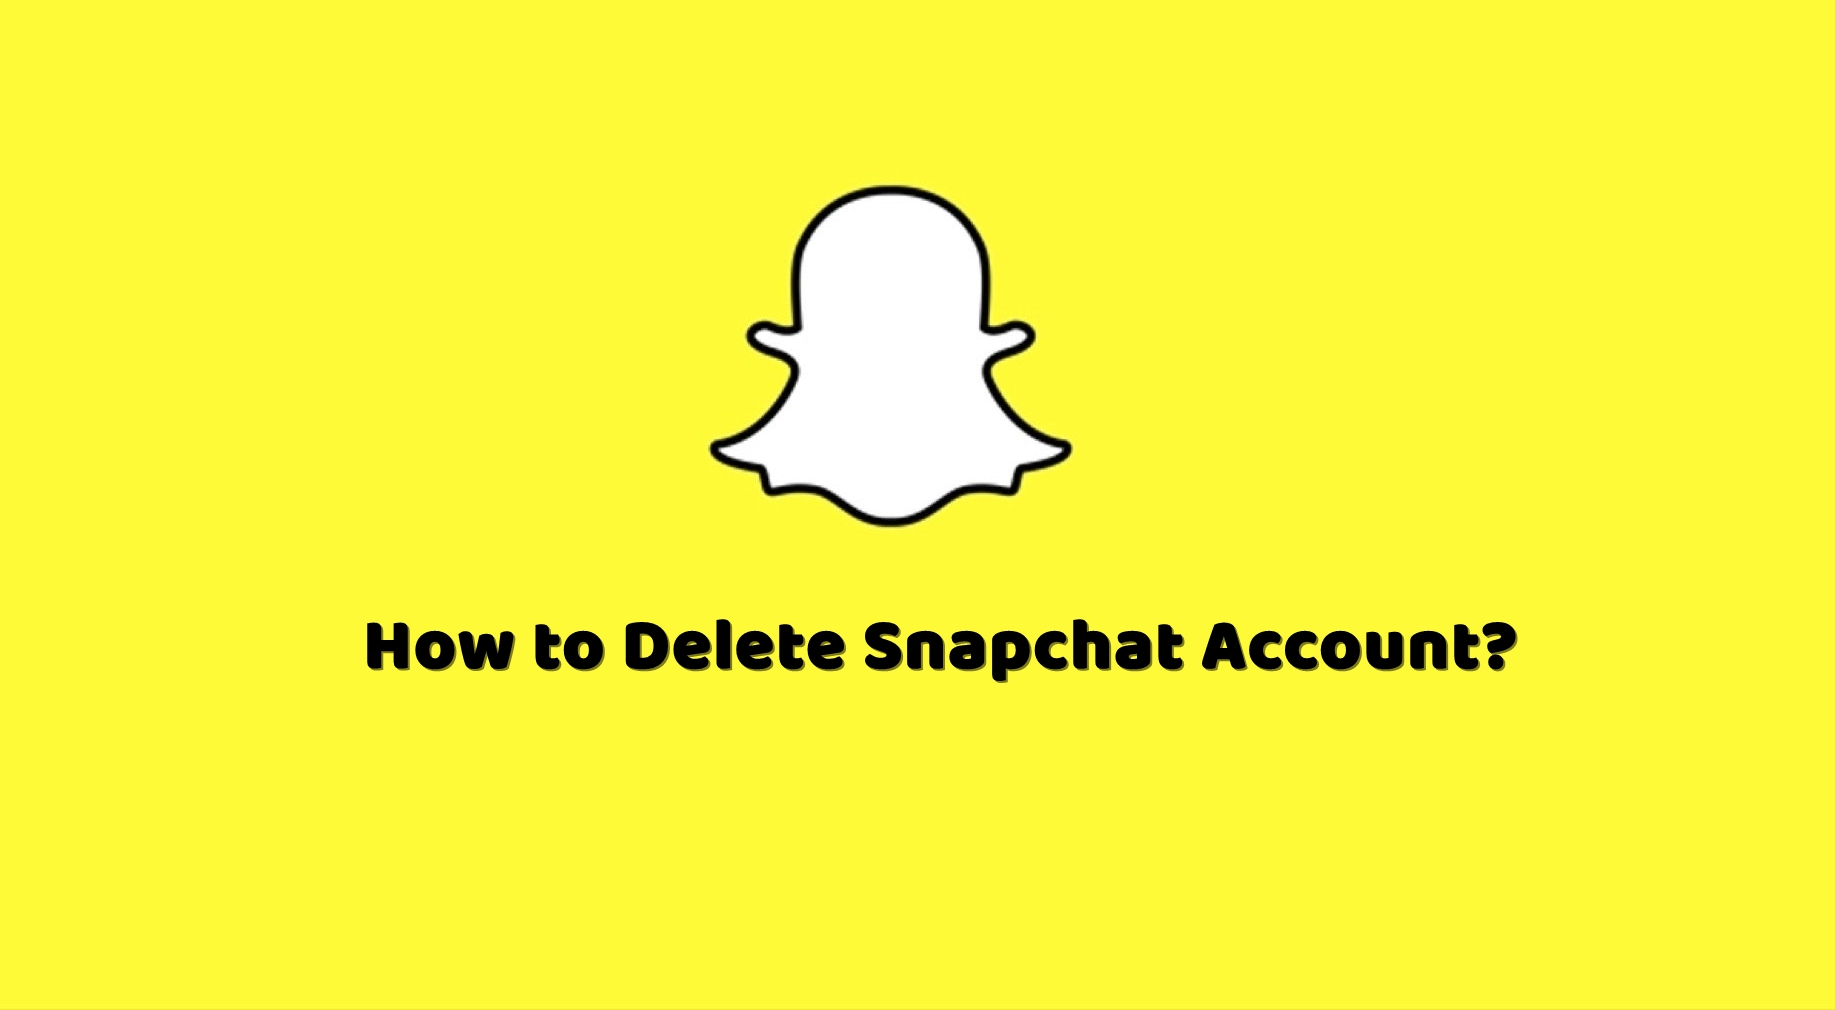 Kuinka poistaa Snapchat-tilisi?